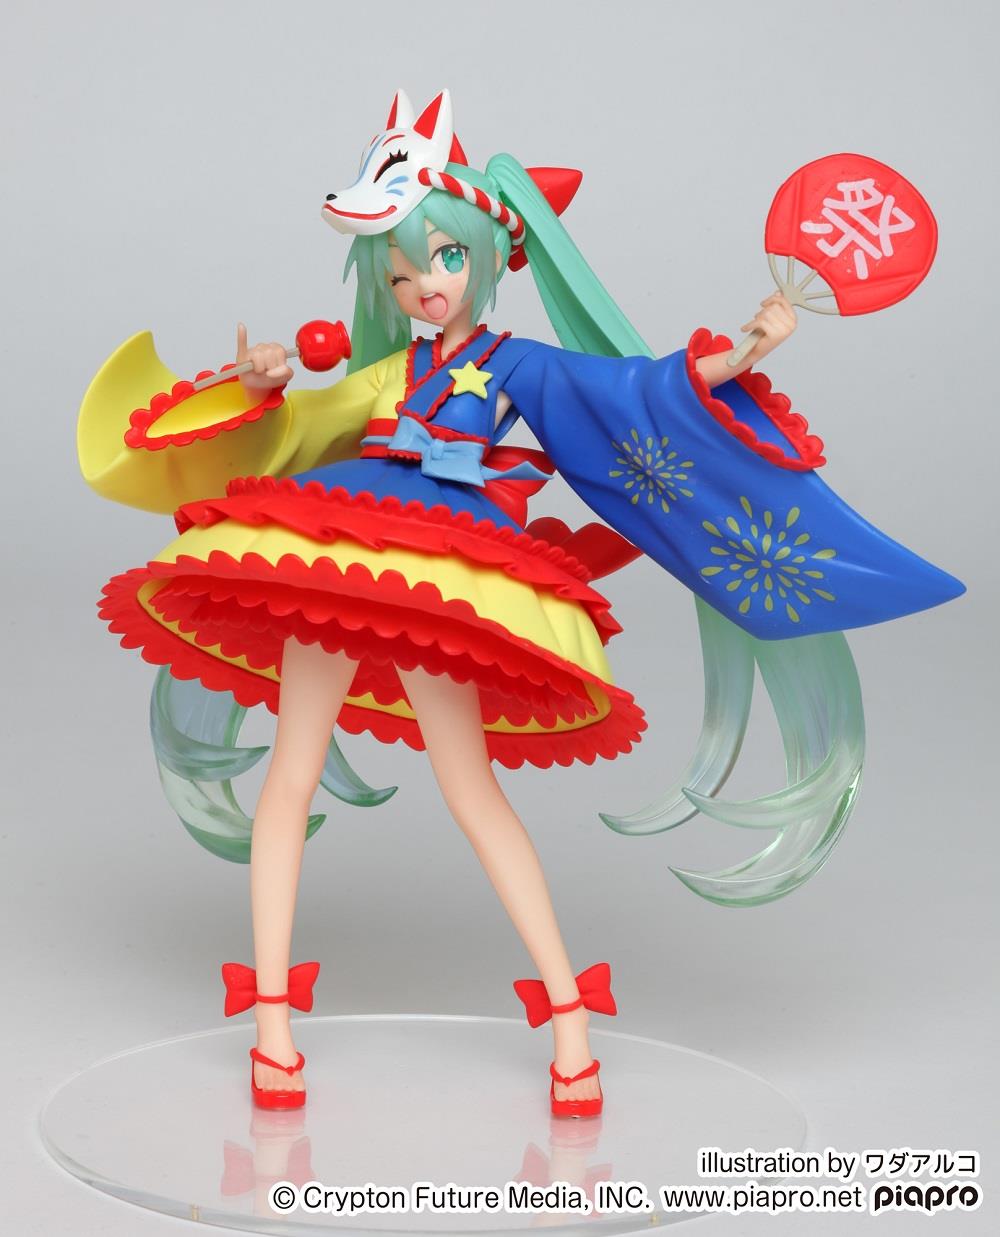 Vocaloid: Hatsune Miku Summer 2 Figure